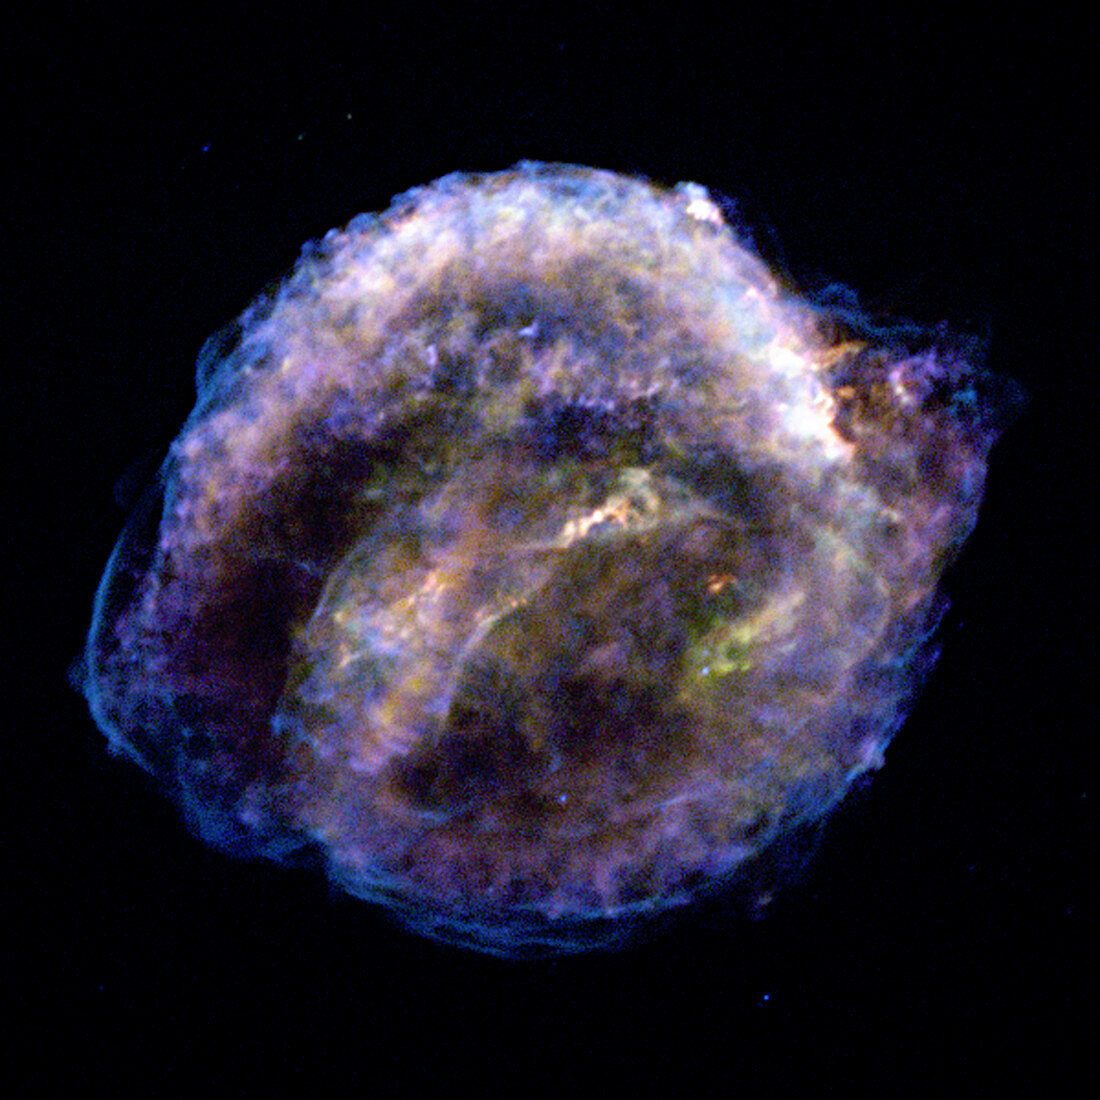 Kepler supernova remnant,Chandra image